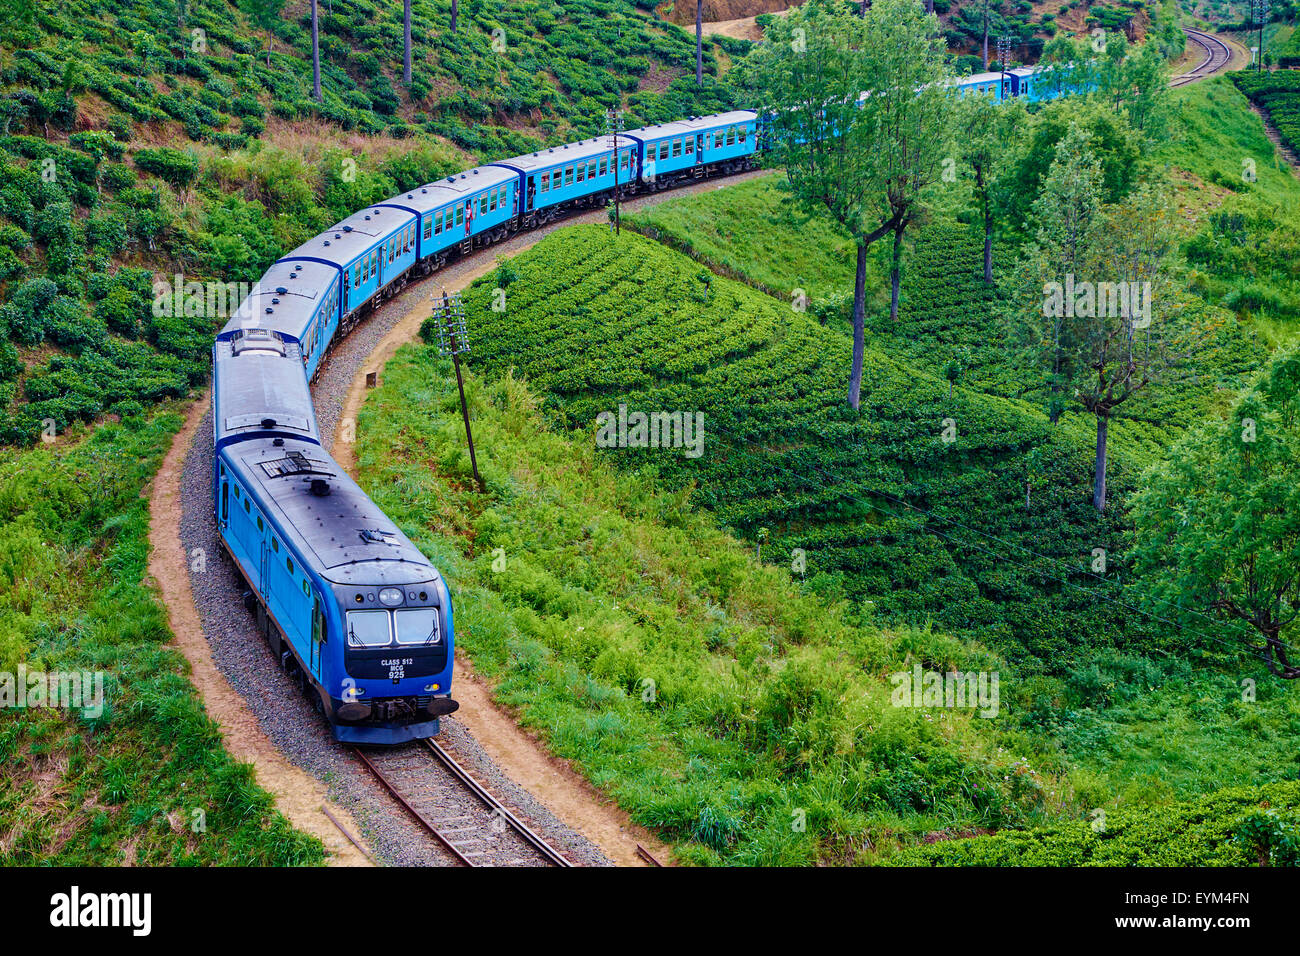 Sri Lanka, Ceylon, Central Province, Nuwara Eliya, train in the tea plantation Stock Photo